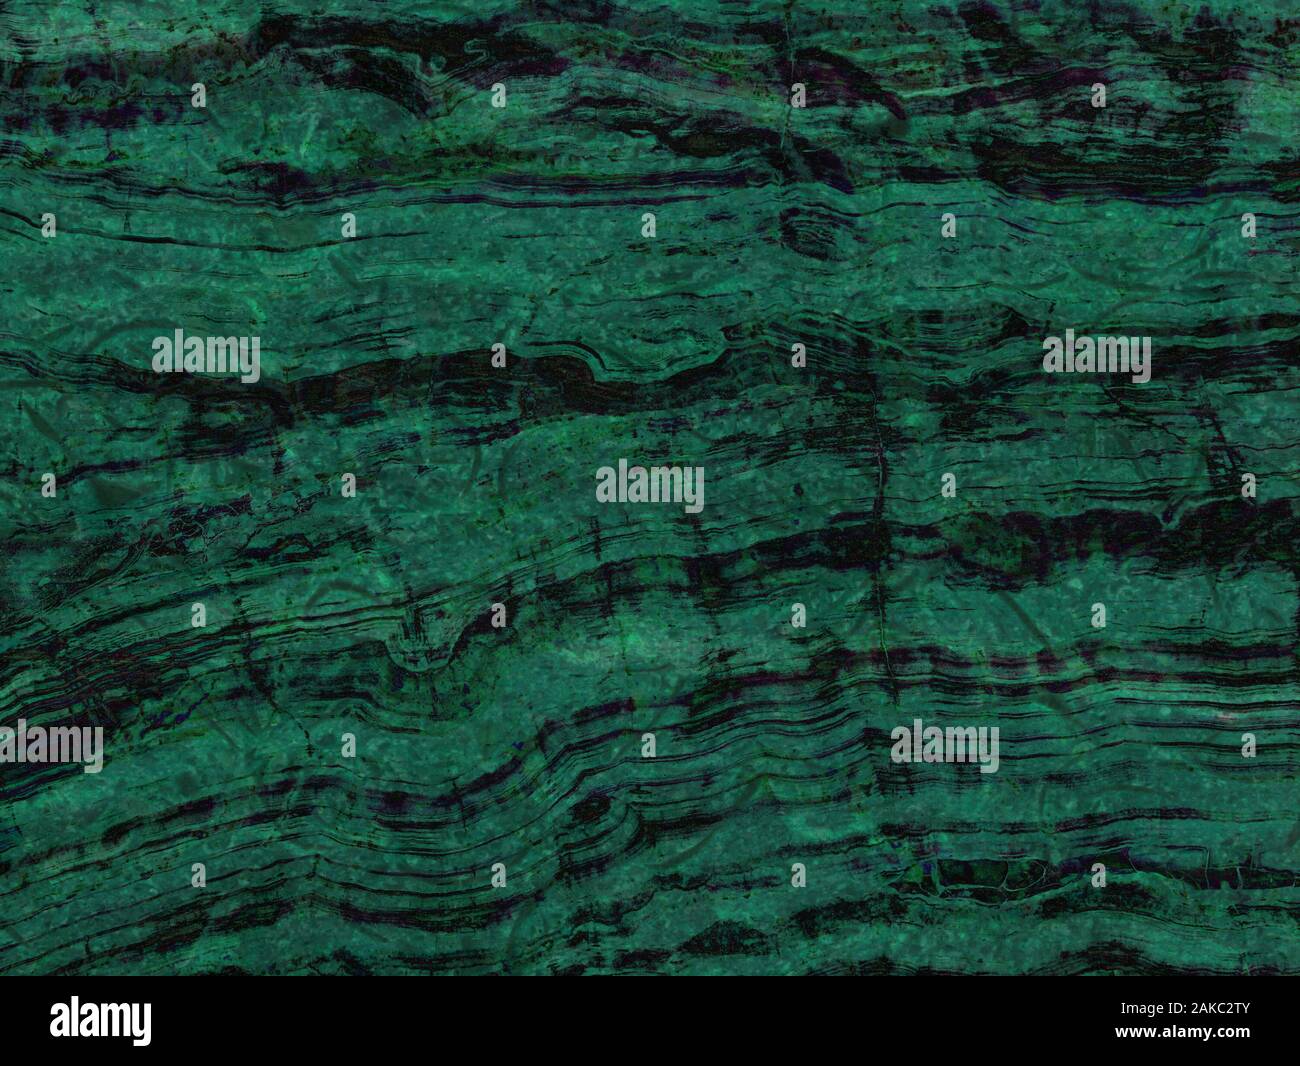 Struktur aus grünem Marmor. Natursteinmuster mit Adern. Stockfoto